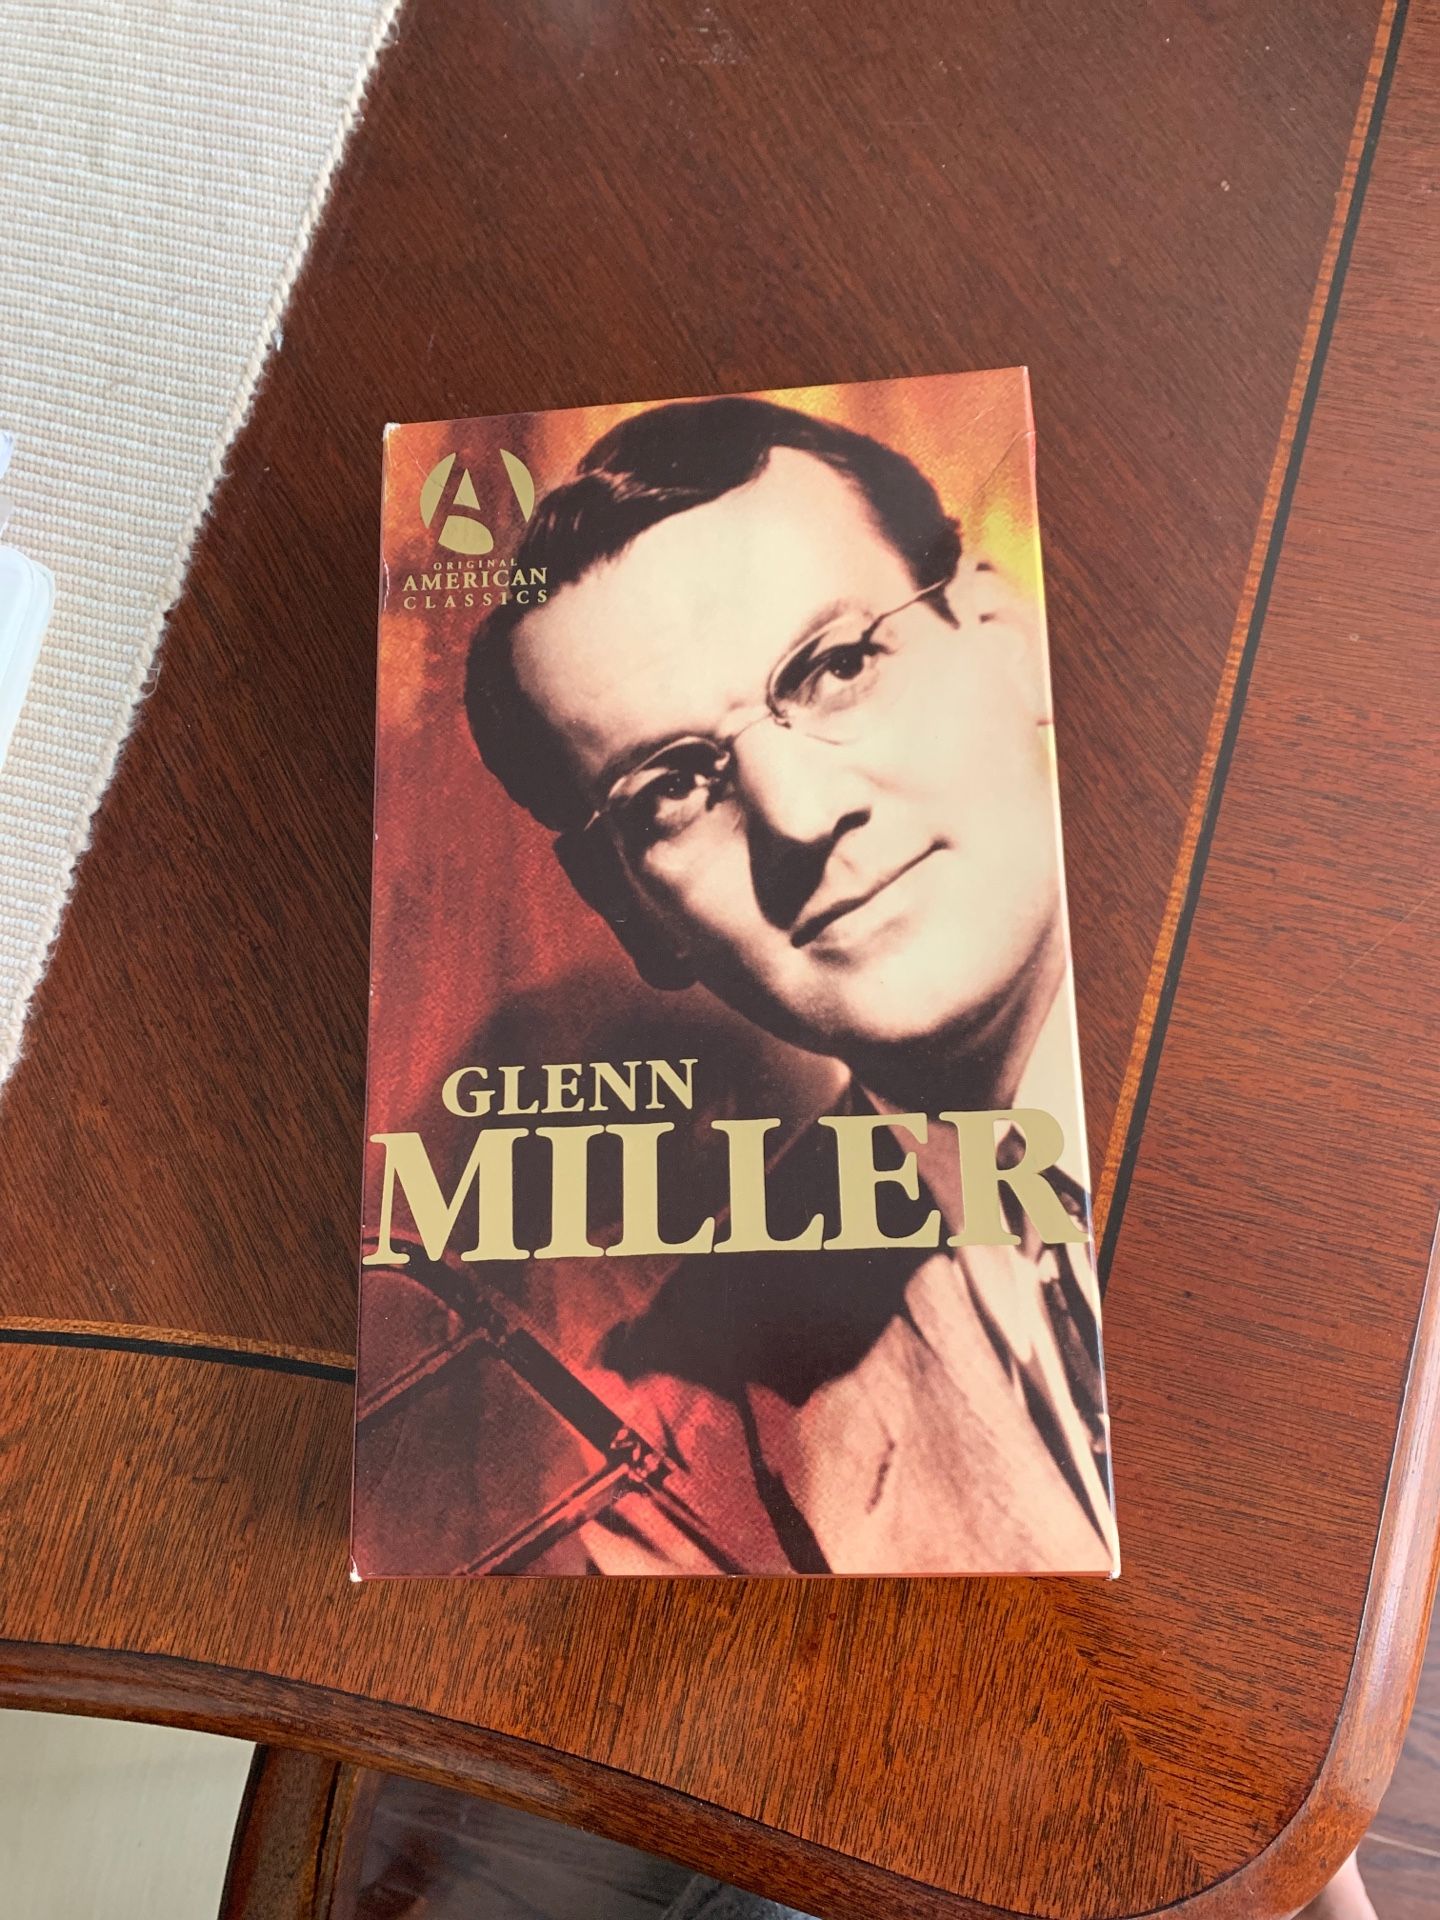 Glenn Miller cds